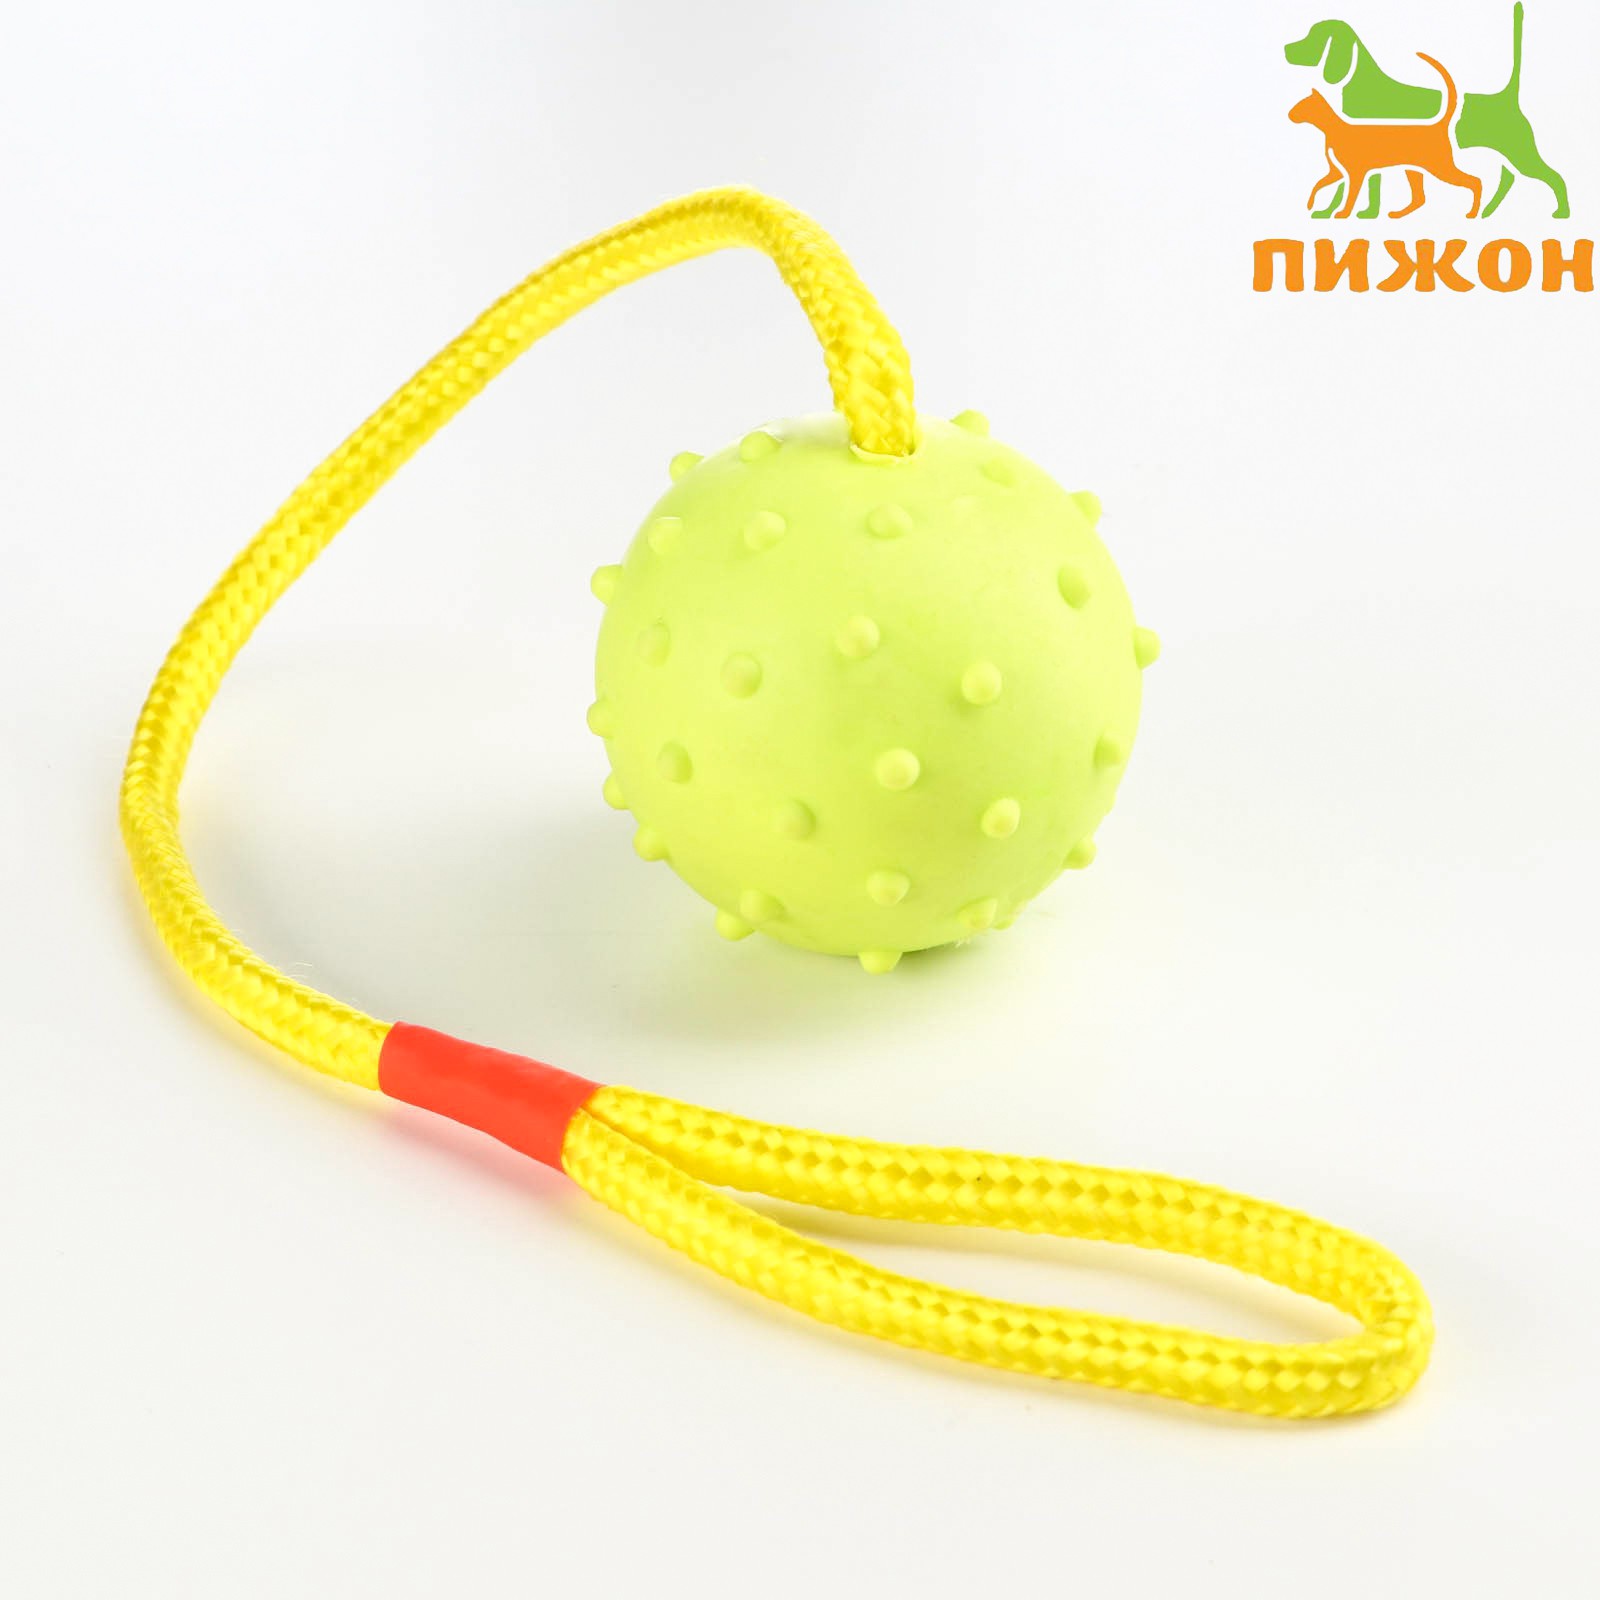 Игрушка Пижон мяч на веревке 6 см салатовая - фото 1